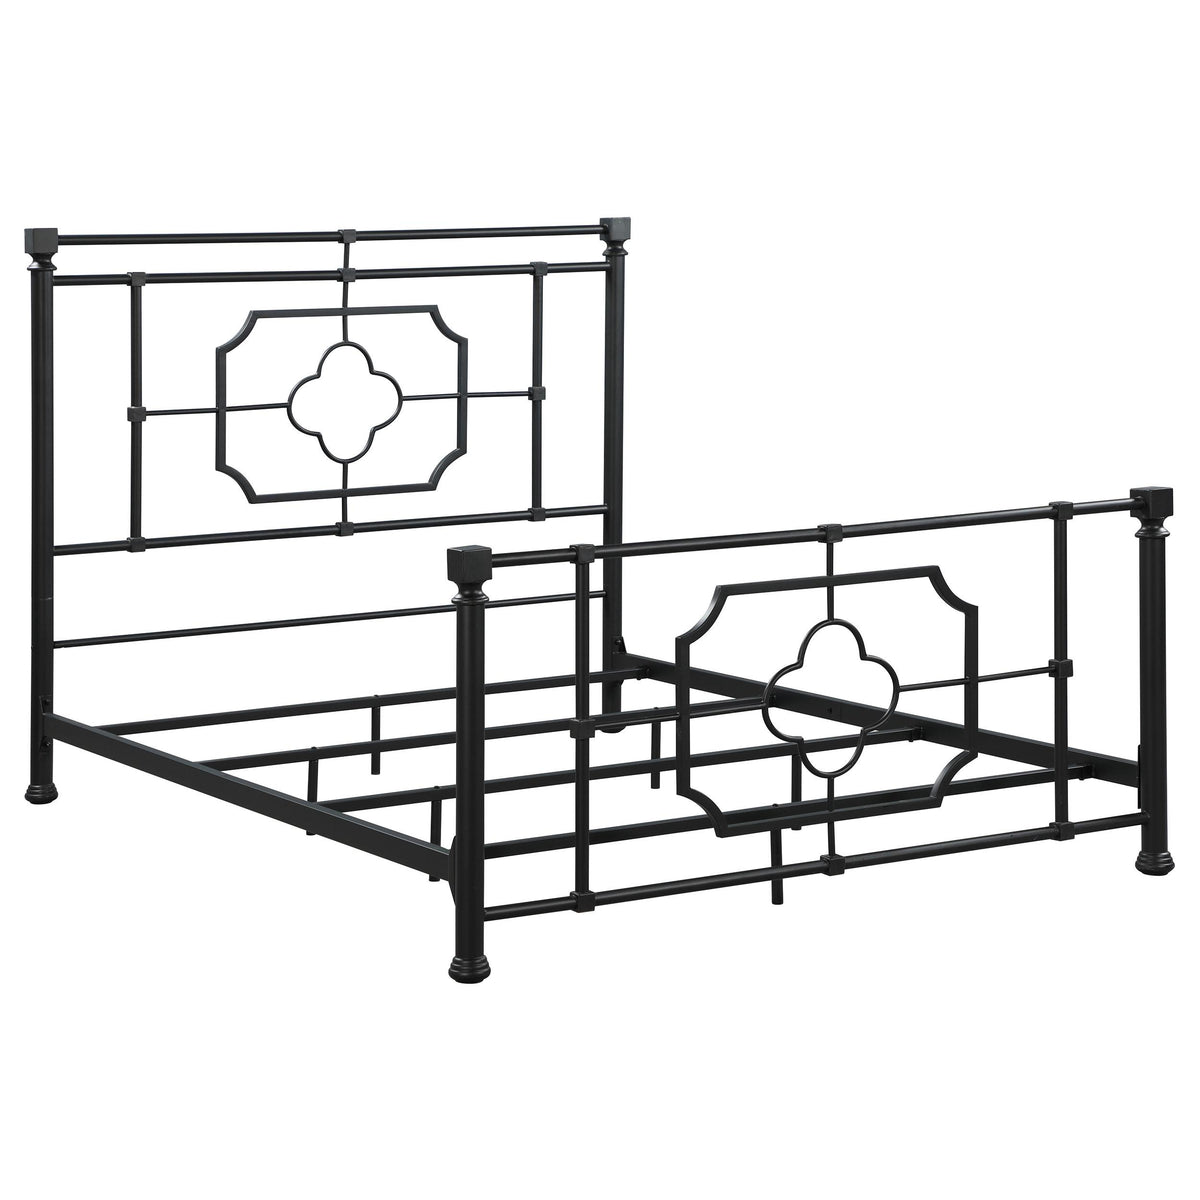 Paskay Queen Metal Panel Bed Matte Black Paskay Queen Metal Panel Bed Matte Black Half Price Furniture